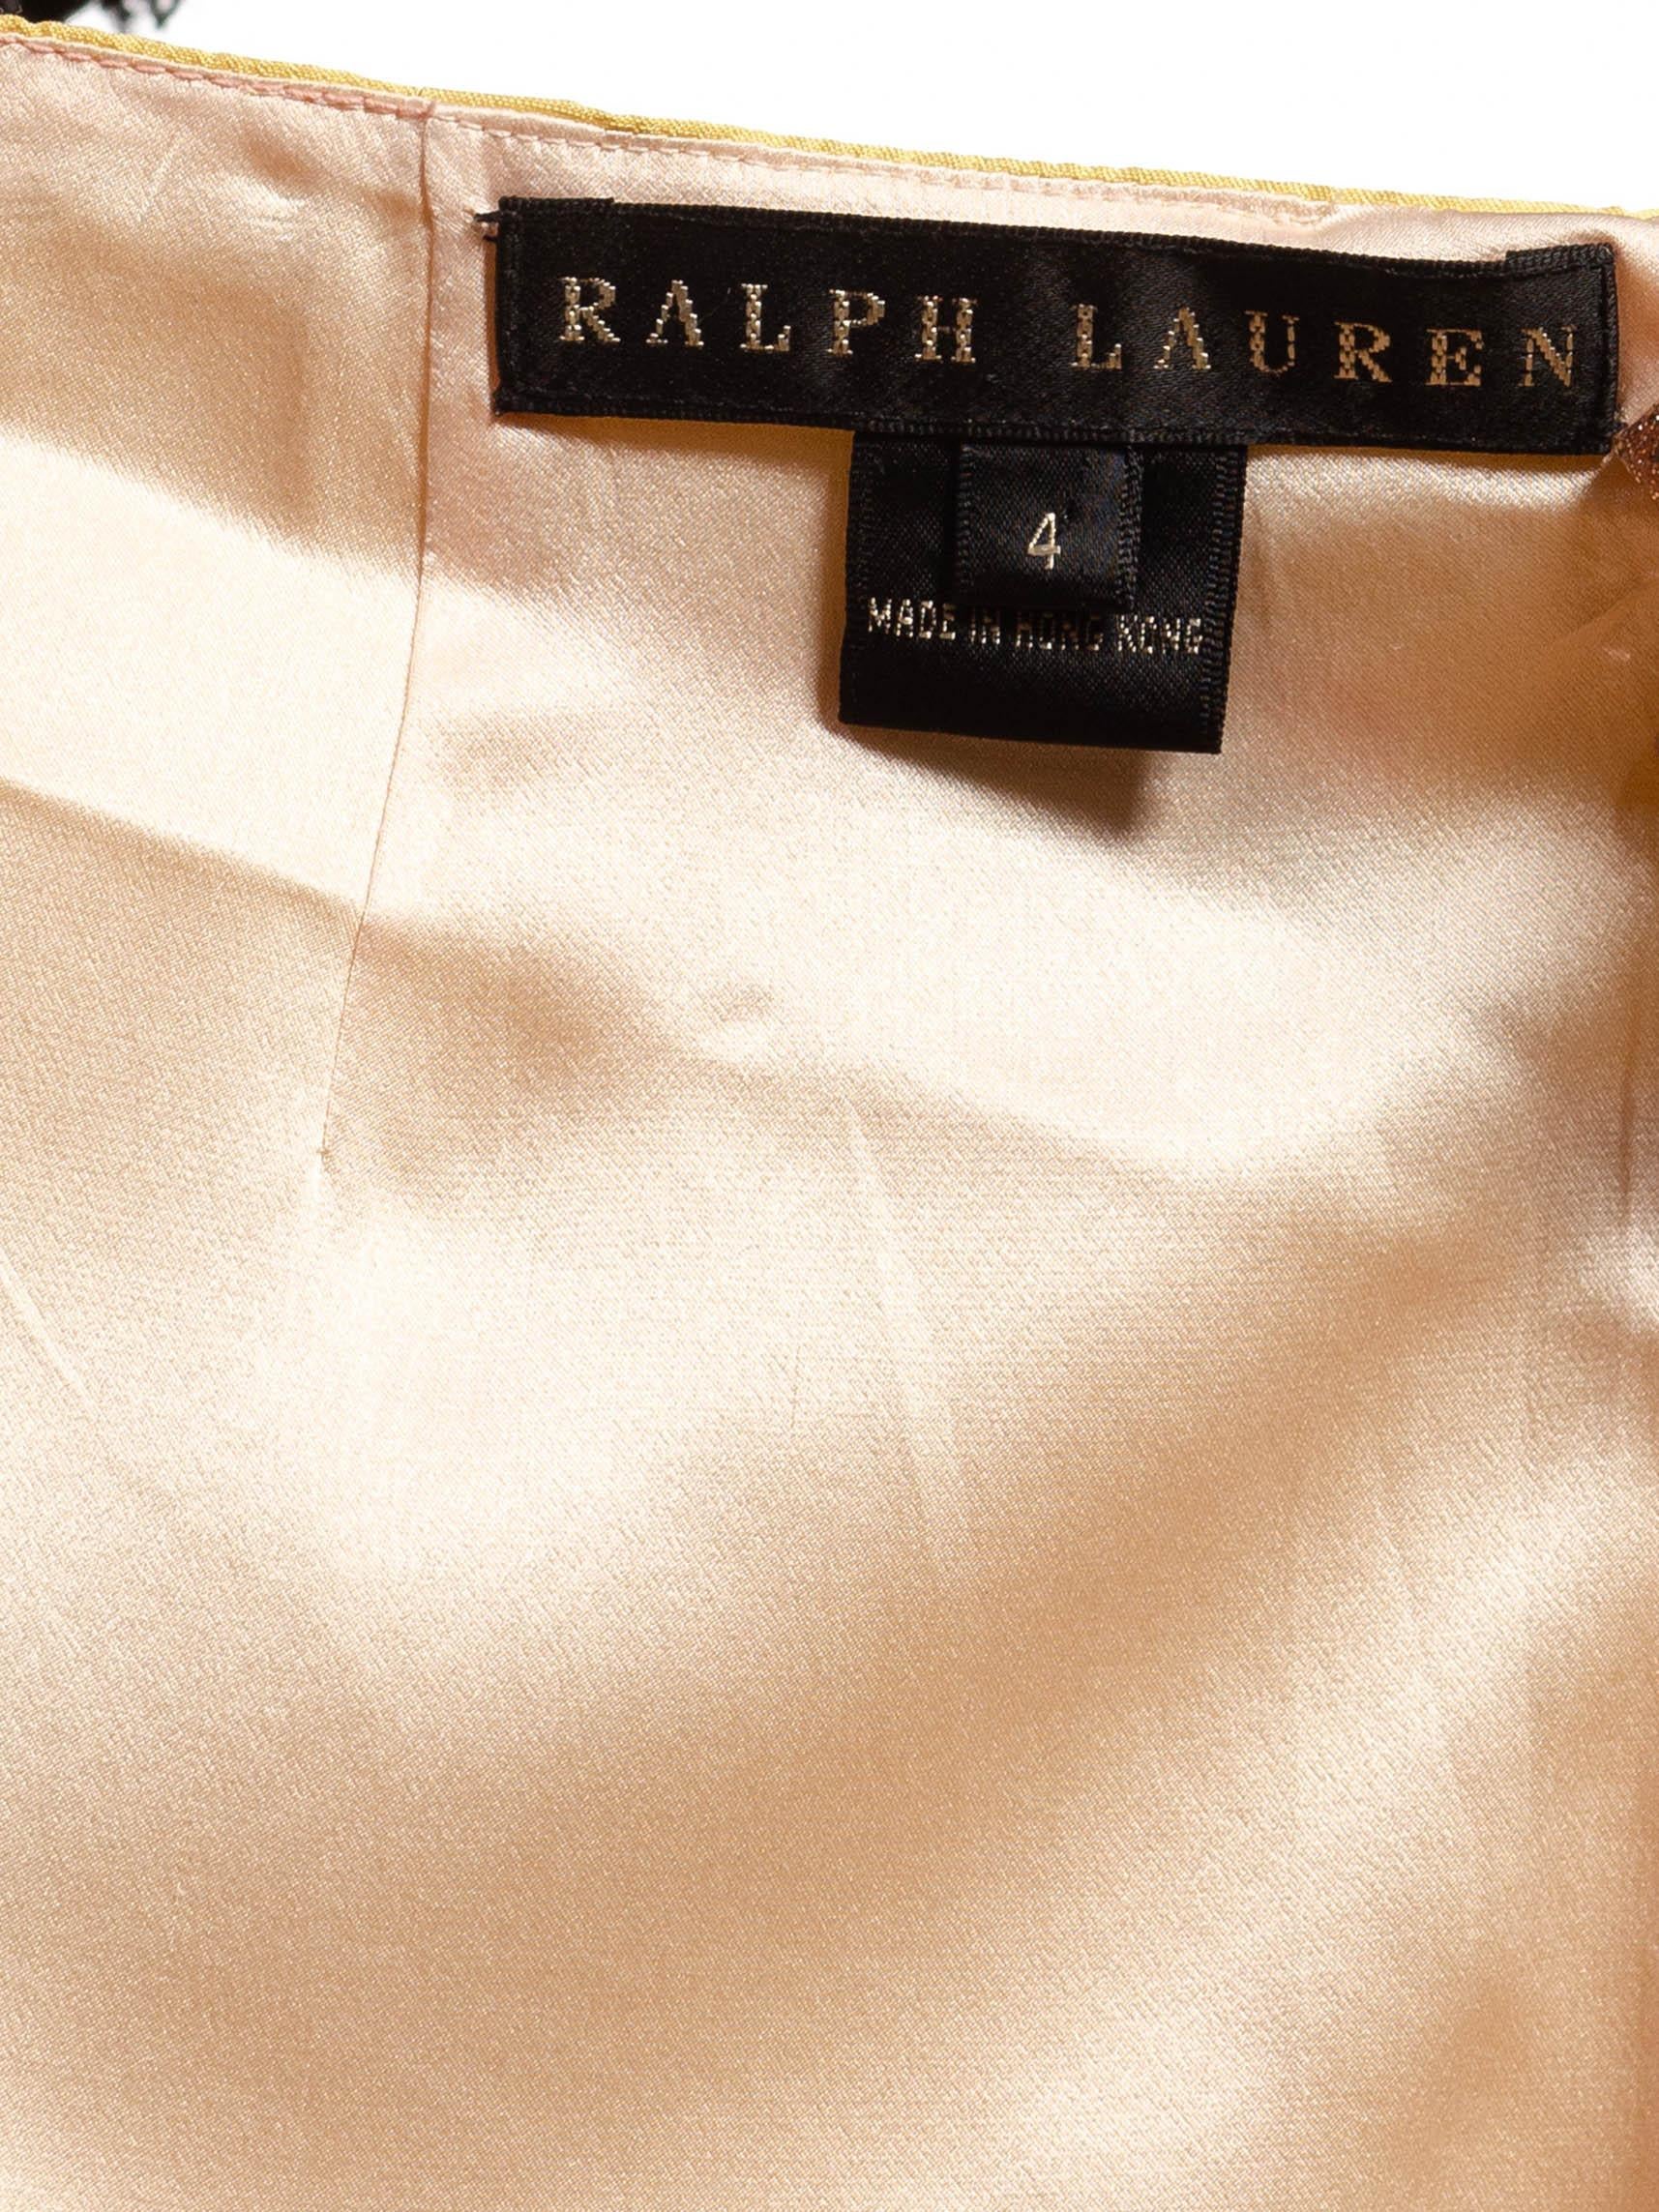 Women's 1990S Ralph Lauren Butter Yellow Silk Embroidered Rachel Green Style Skirt